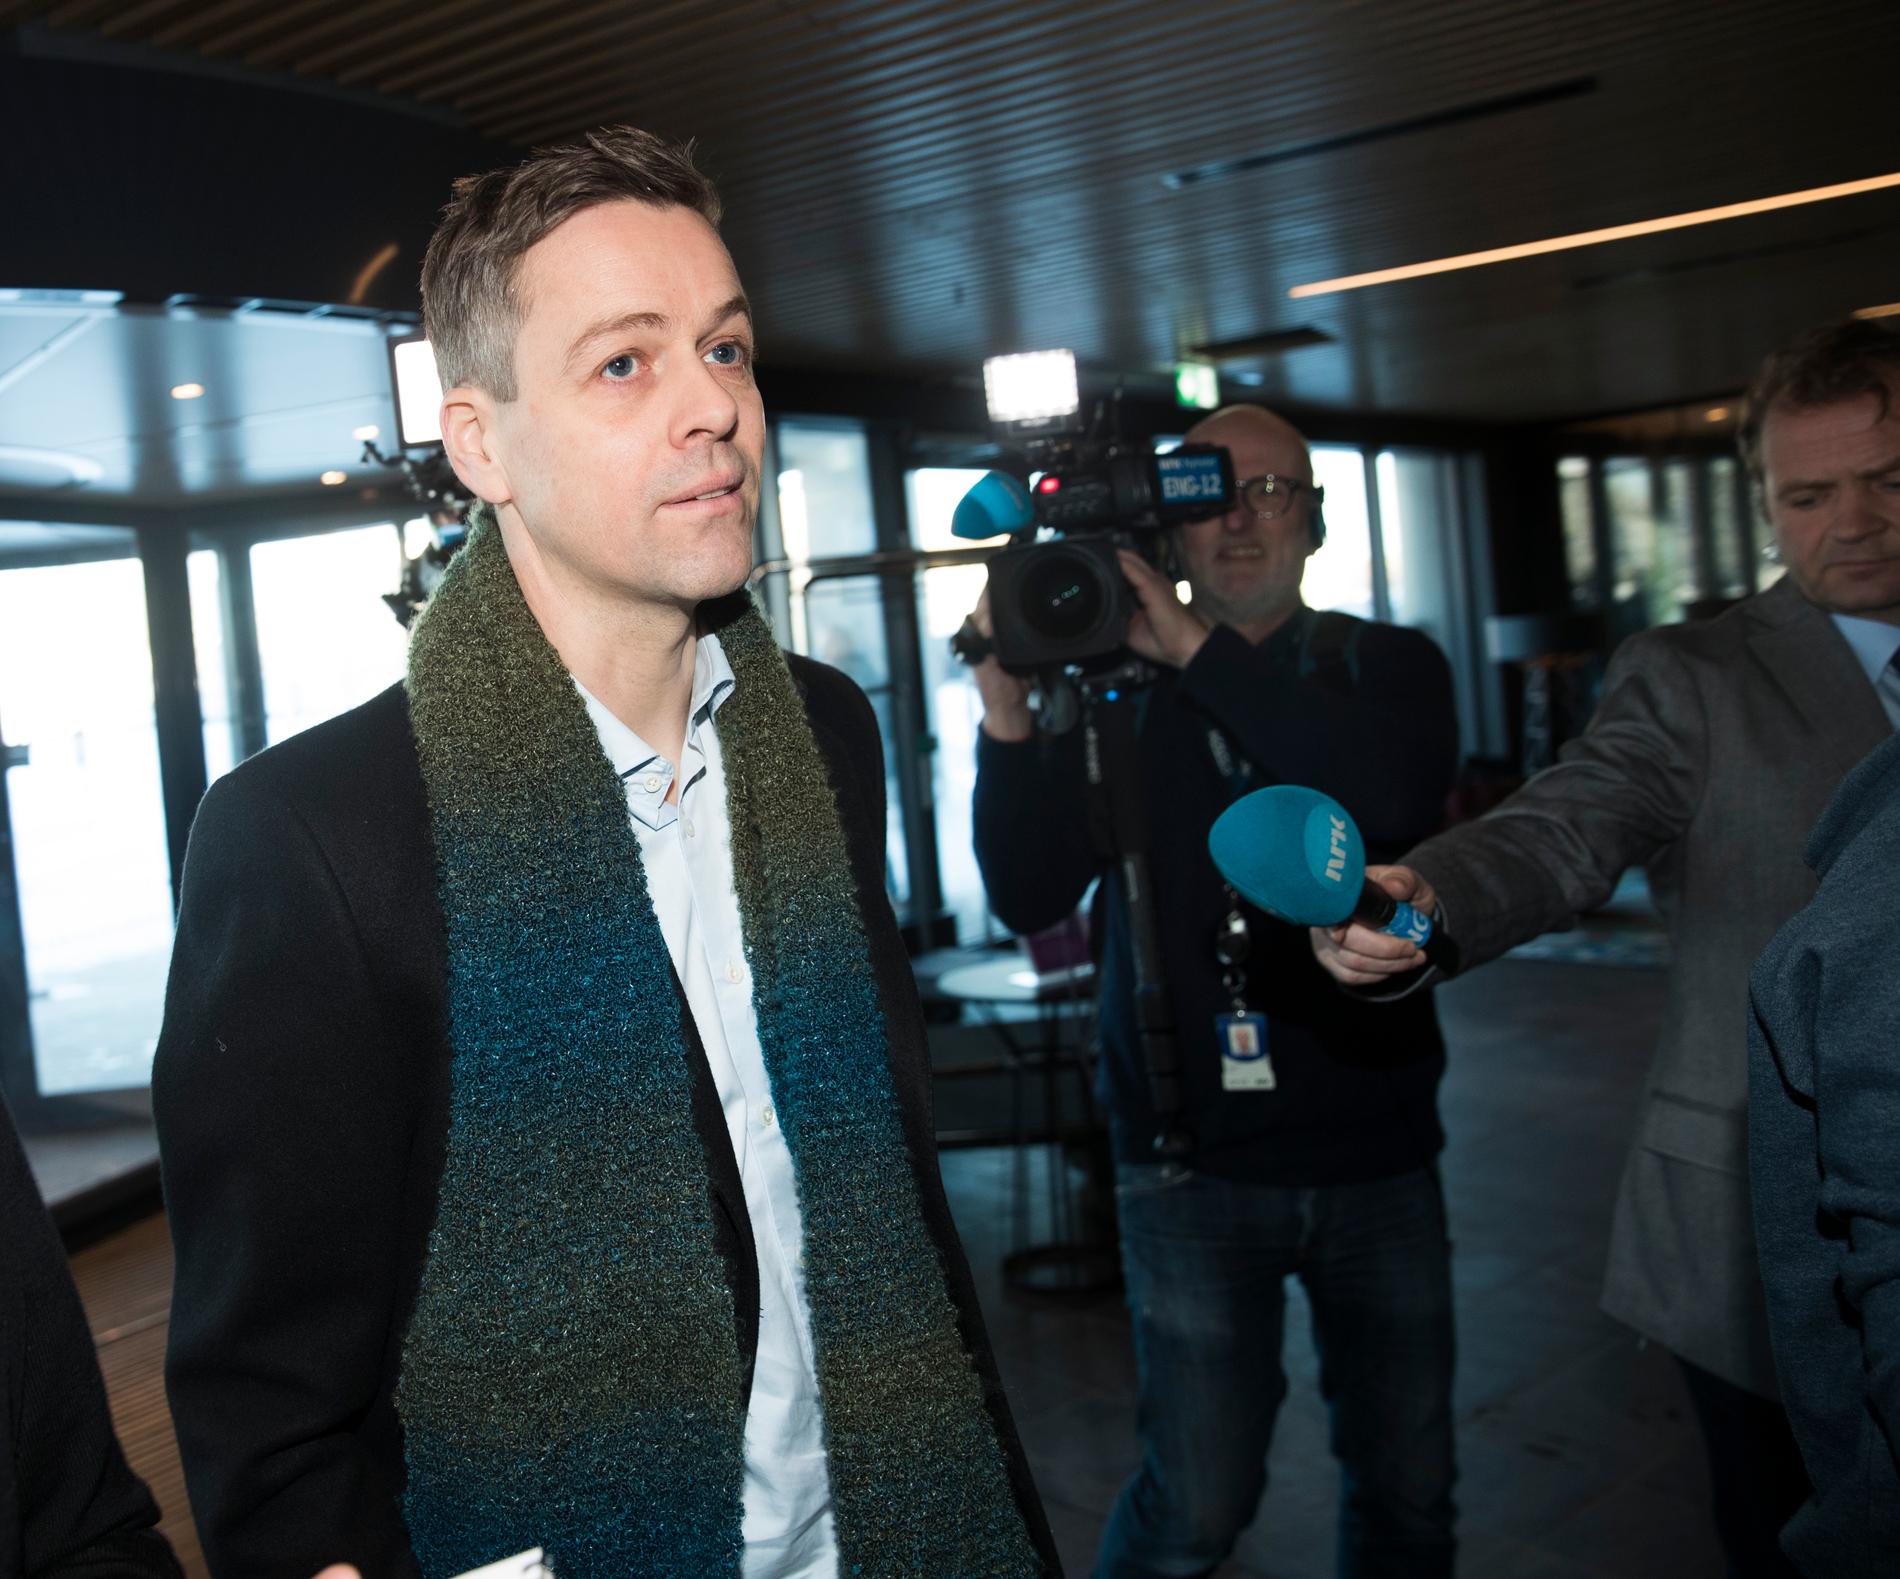 GIKK AV: Knut Arild Hareide trakk seg som partileder torsdag kveld, etter at det ble klart at partiet hans går i regjering med Høyre, Frp og Venstre.